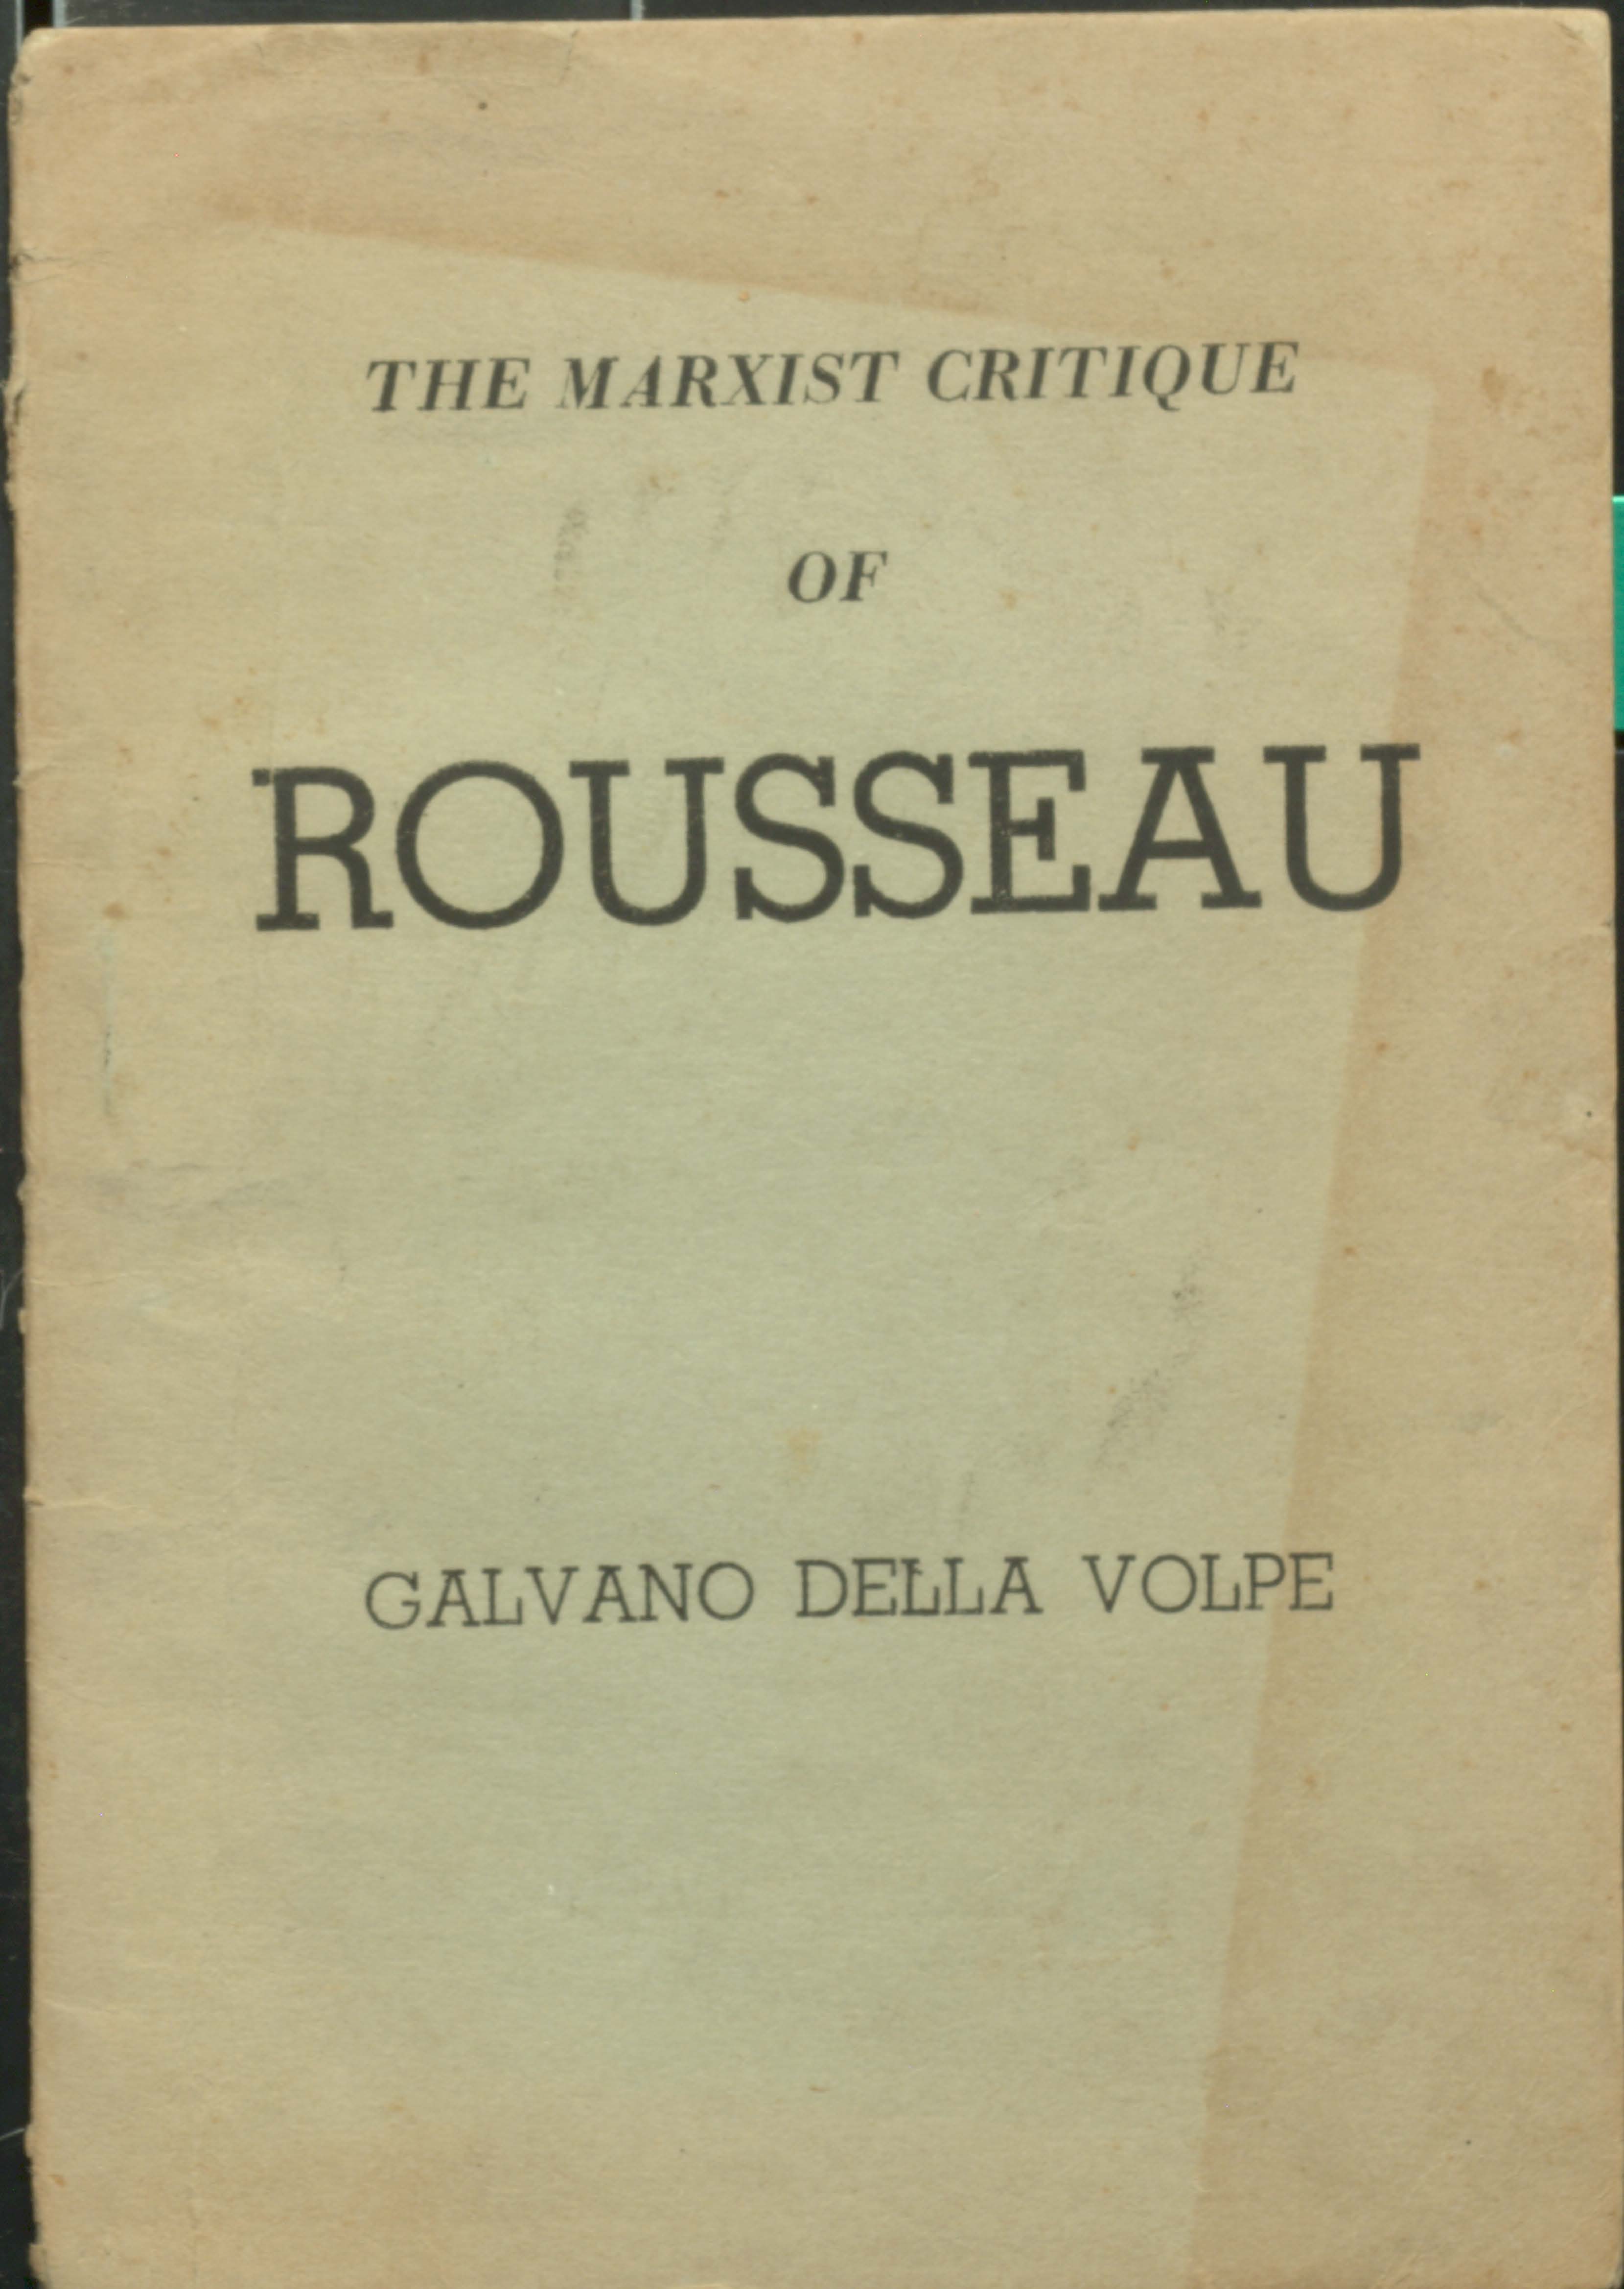 The marxist critique of rousseau